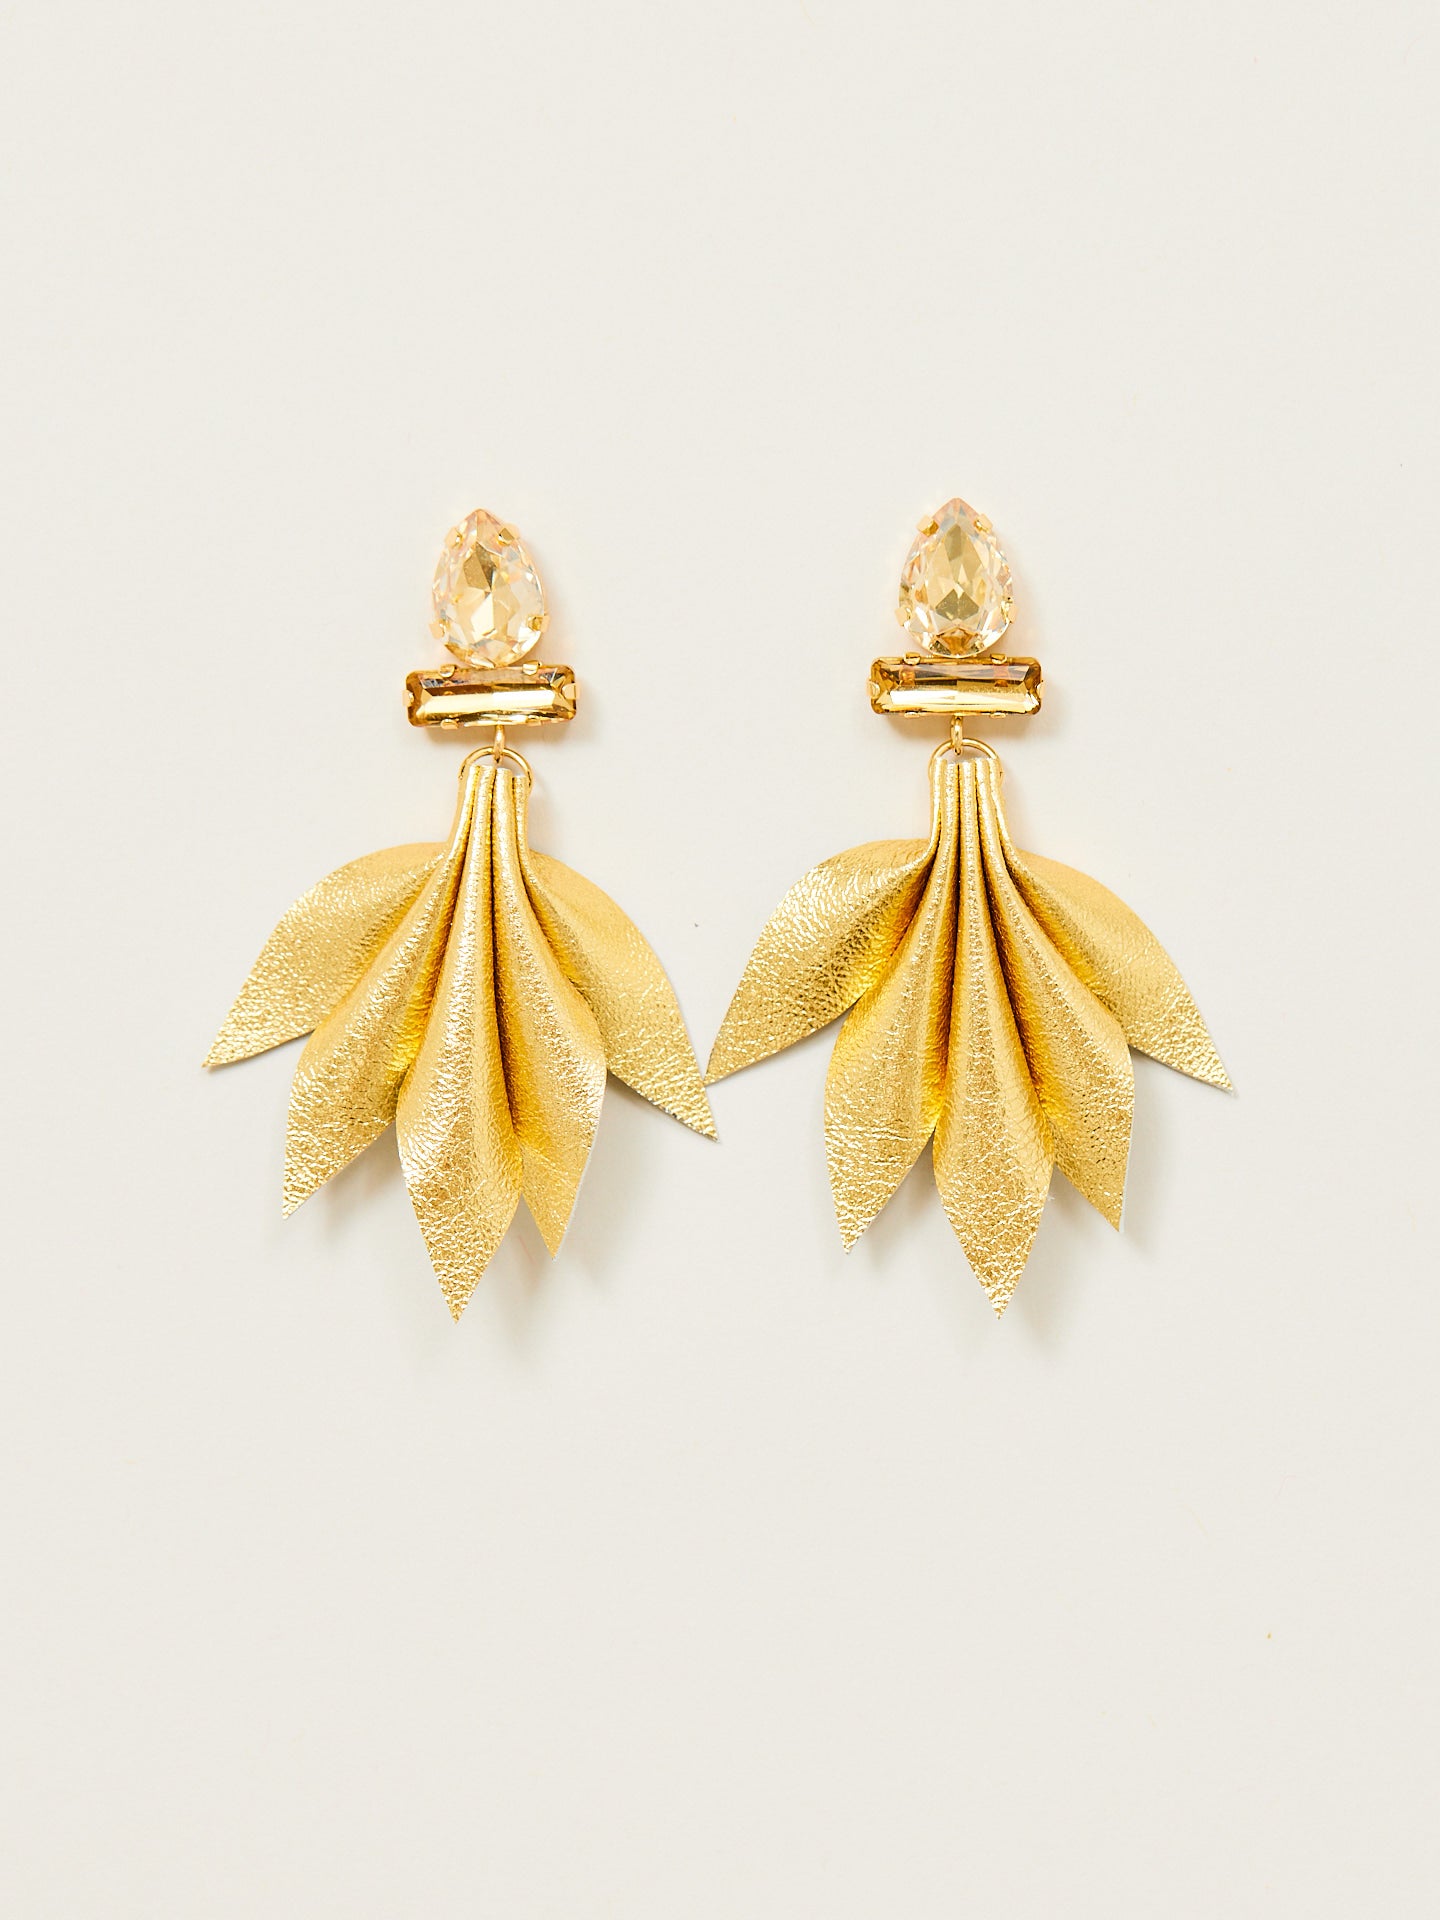 Paar von goldener Nappa Leder Ohrringen mit goldenem Stecker